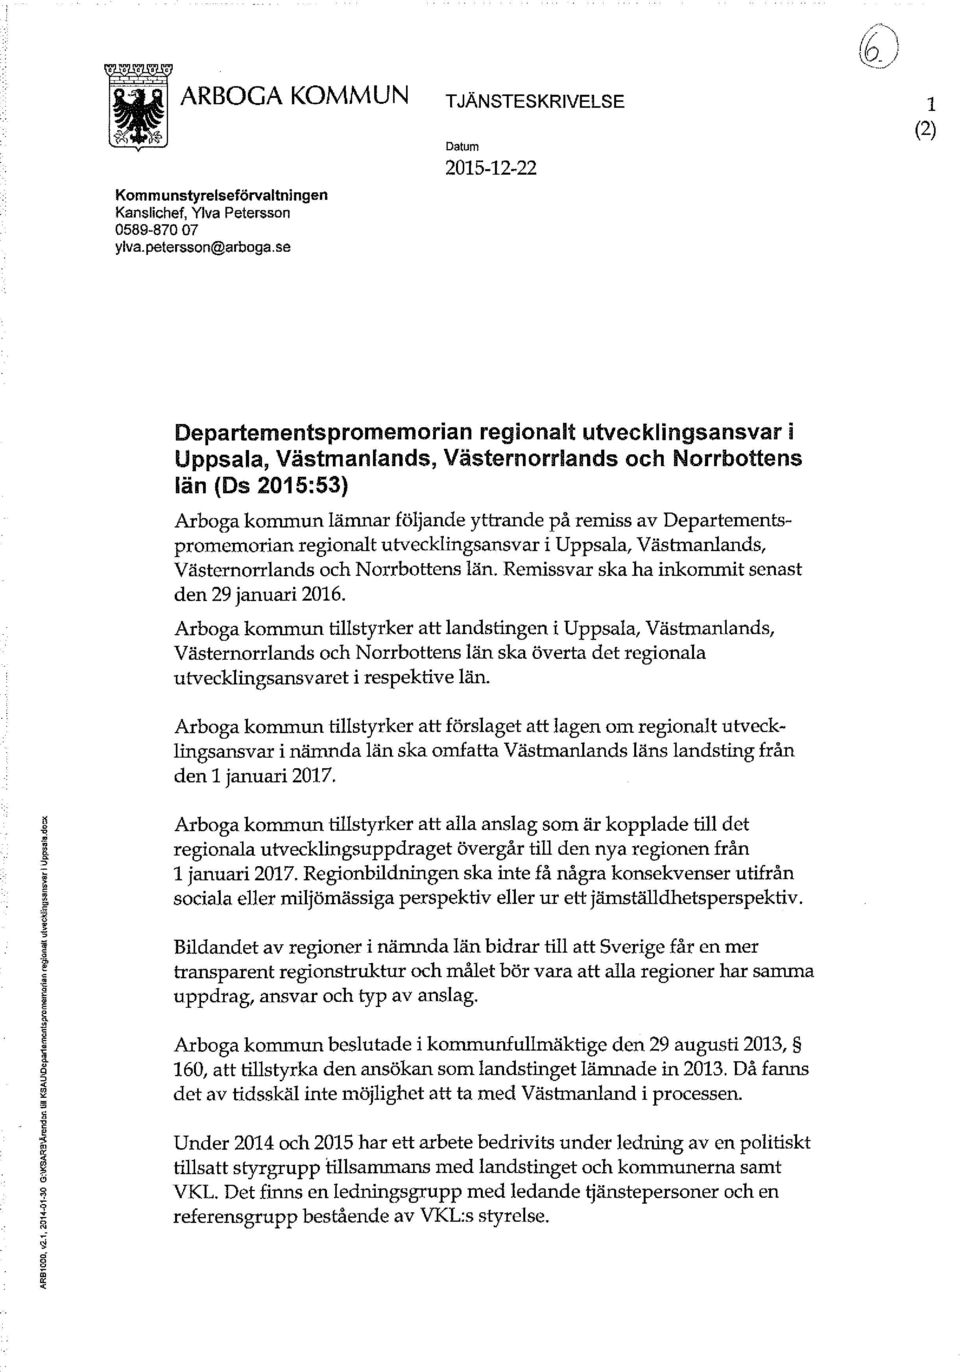 yttrande på remiss av Departementspromemorian regionalt utvecklingsansvar i Uppsala, Västmanlands, Västernorrlands och Norrbottens län. Remissvar ska ha inkommit senast den 29 januari 2016.